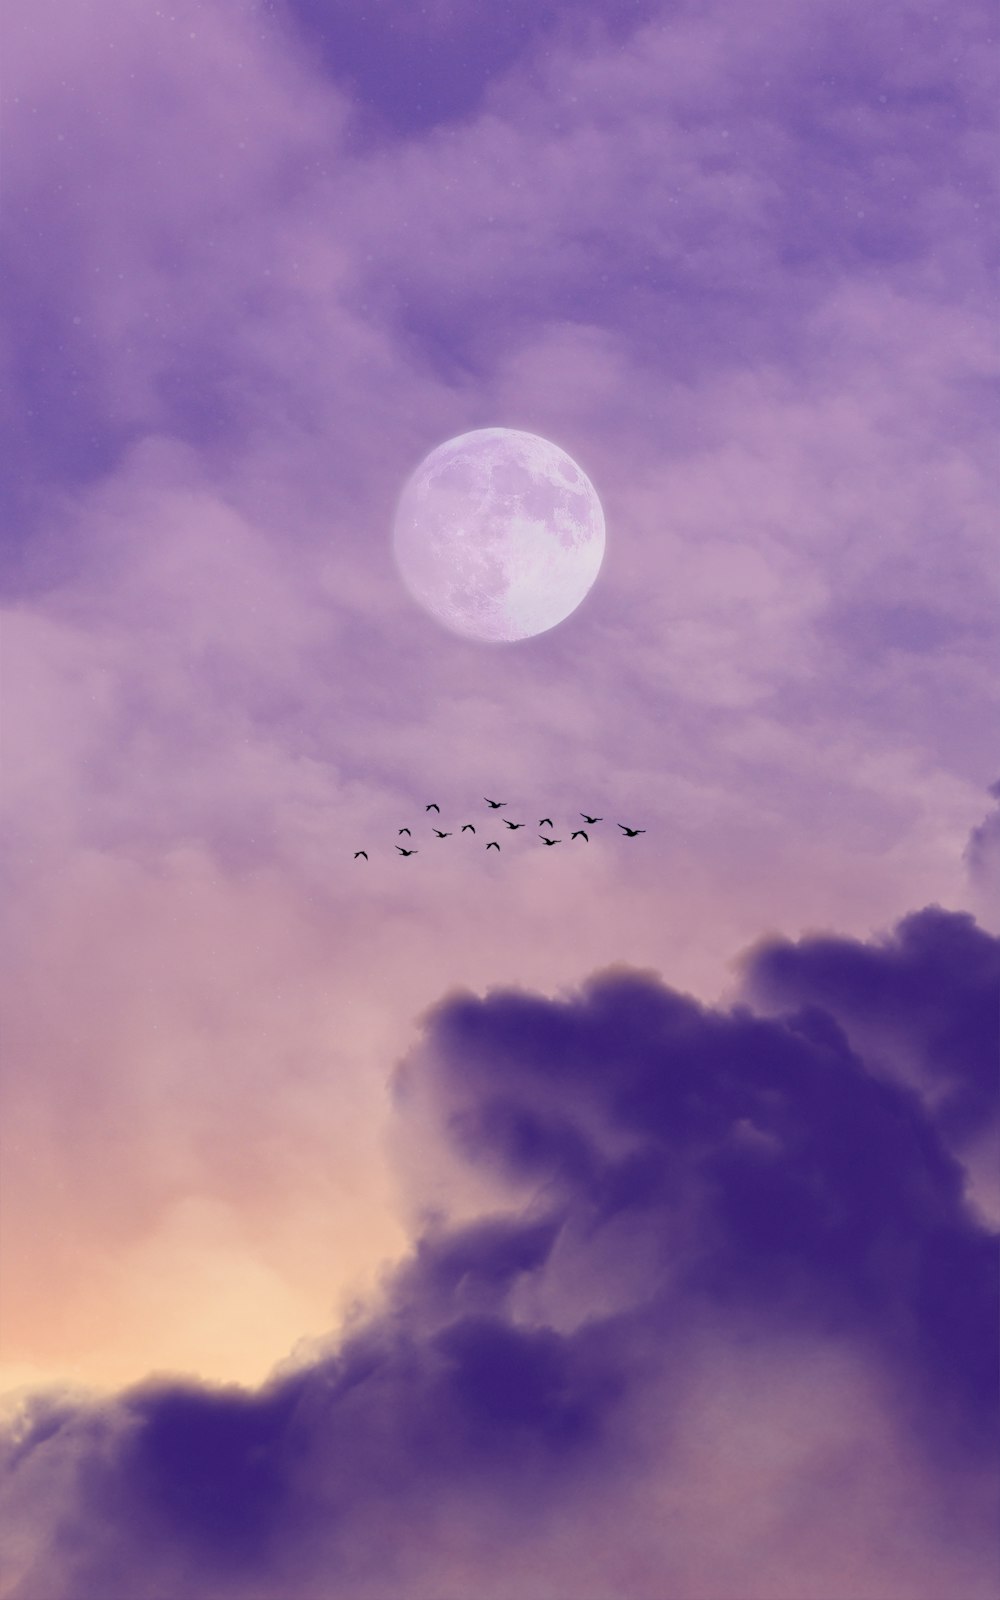 Foto luna llena sobre las nubes durante la noche – Imagen Luna gratis en  Unsplash